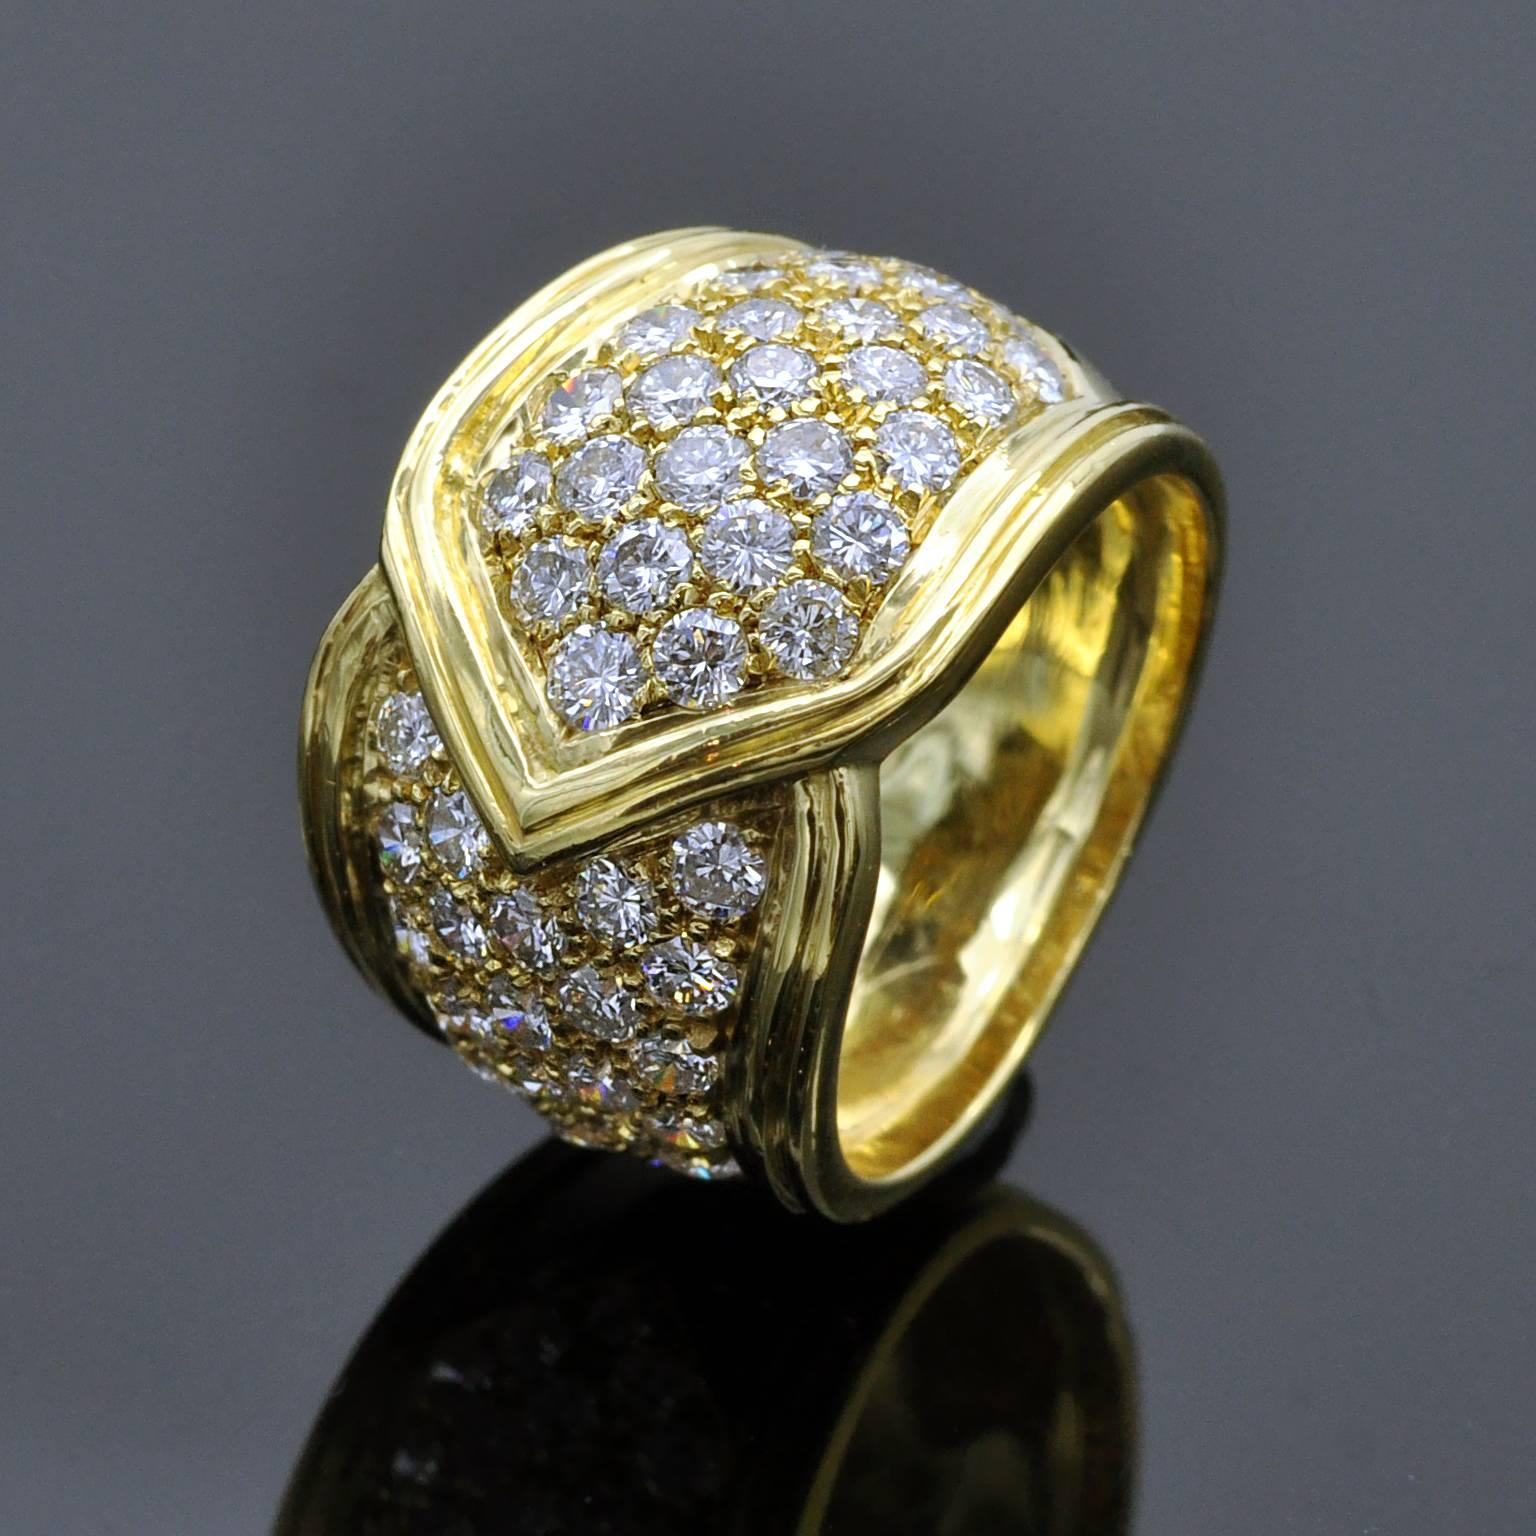 Passendes Set bestehend aus einem Ohrring und einem Ring aus 18 kt Gelbgold mit Clip.
Der Ring besteht aus einem breiten Band, das elegant um den Finger gewickelt ist. Sowohl der Ring als auch die Ohrringe sind mit ca. 3,85 Karat Diamanten im weißen